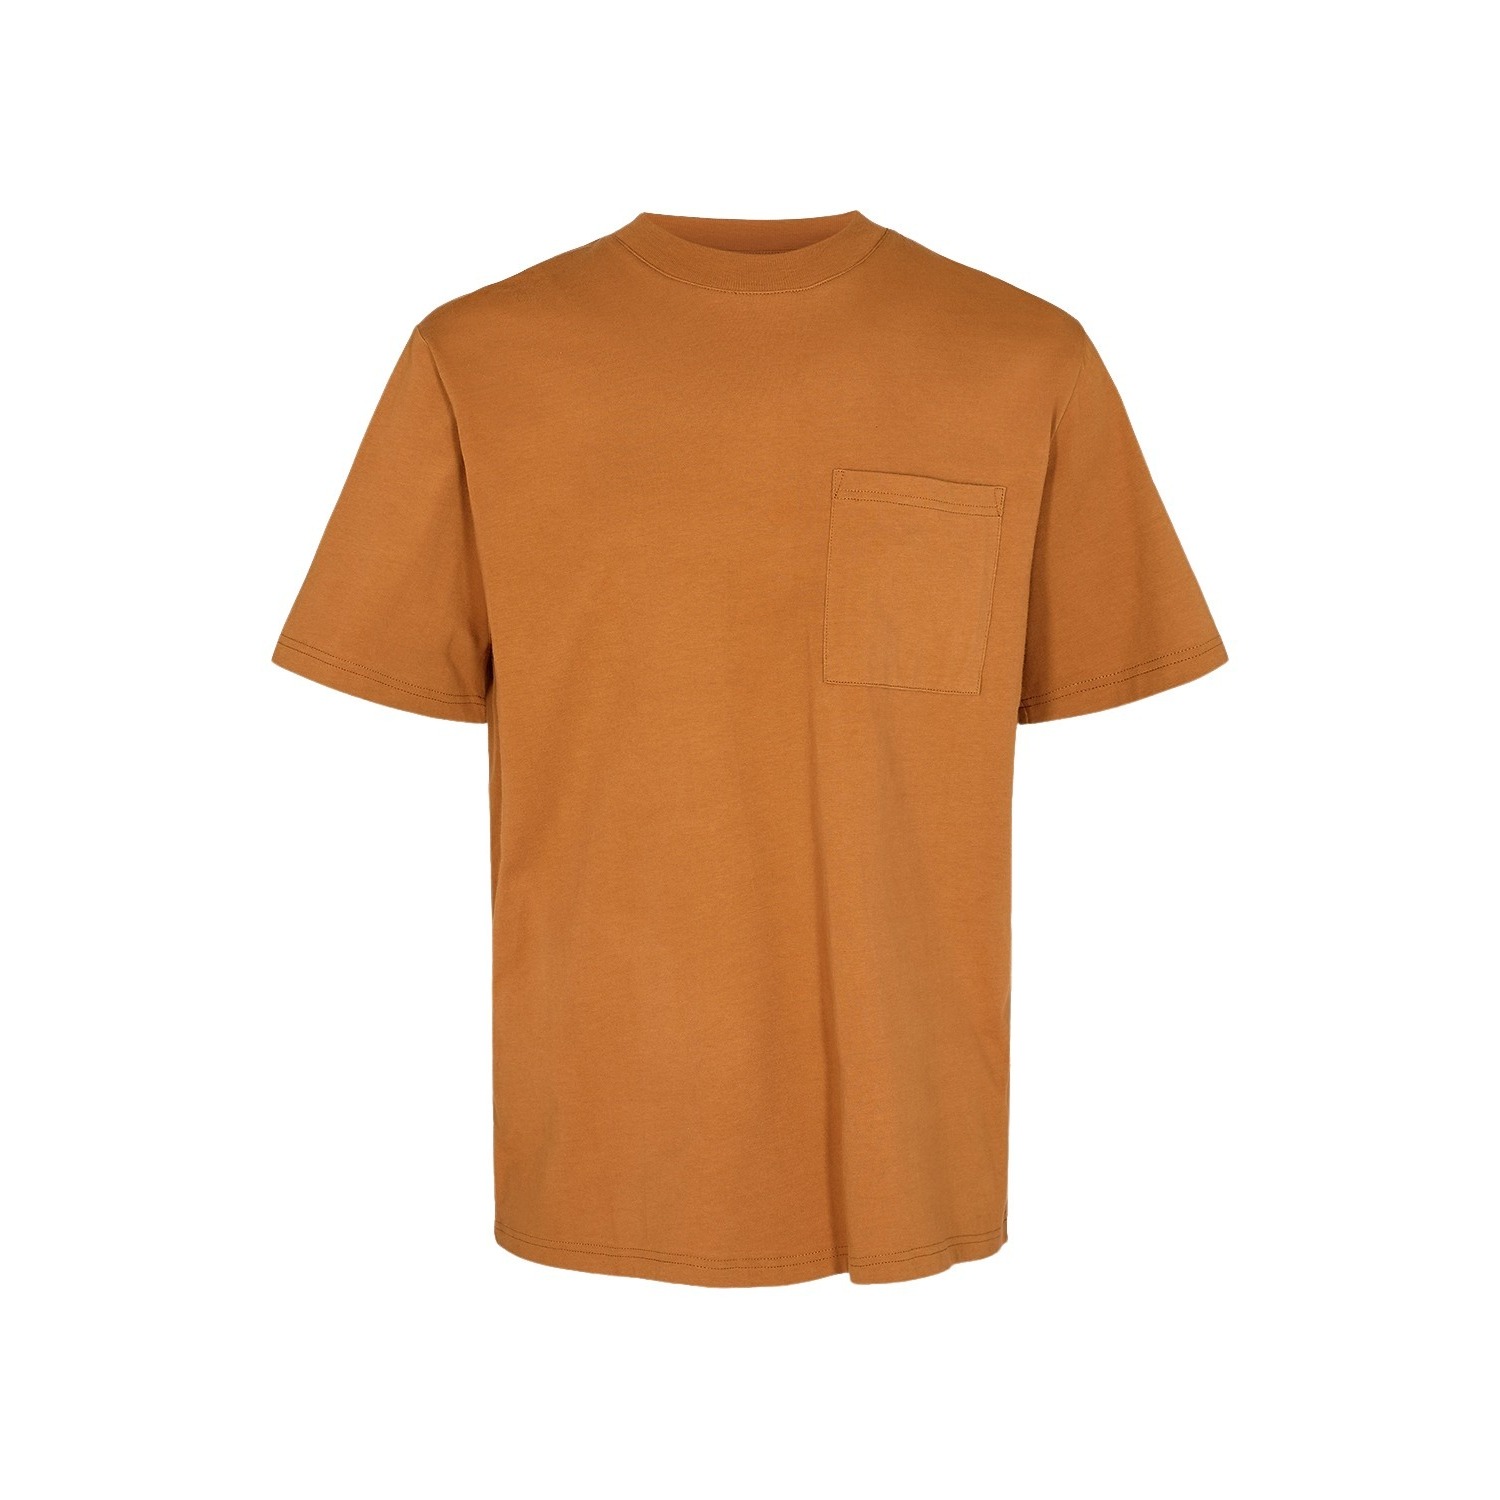 t-shirt minimum coon g012